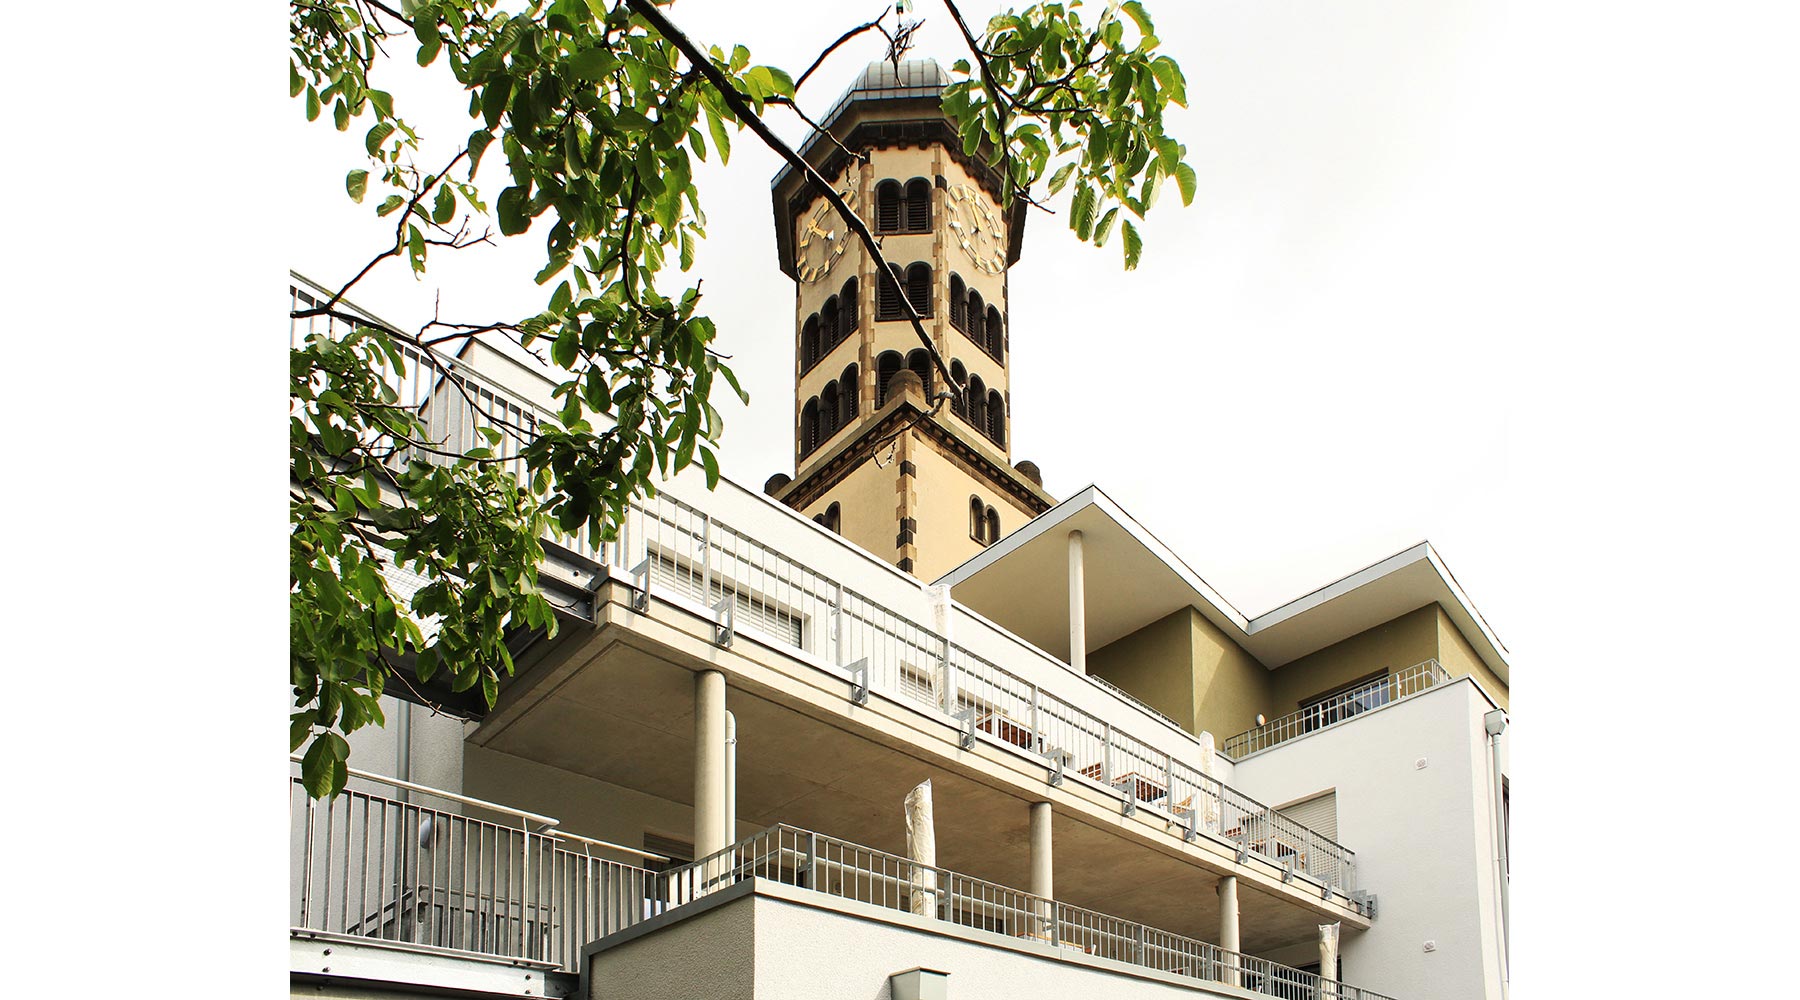 Haus Madeleine in Krefeld. Perspektive von Schrägunten: Blick auf eine Turmuhr.